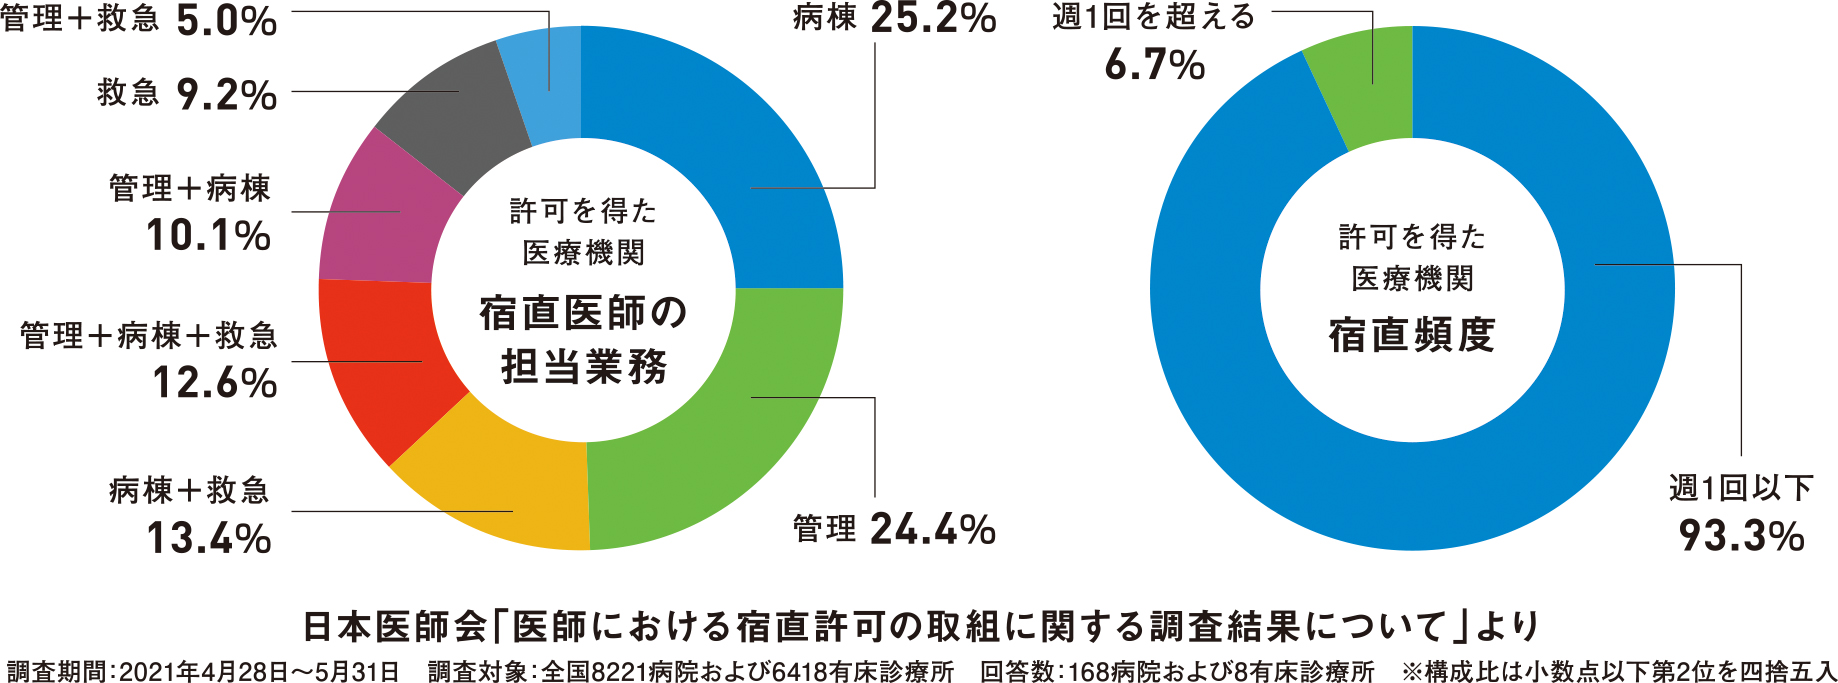 日本医師会調査 宿直許可取得は「週1回以下」が9割